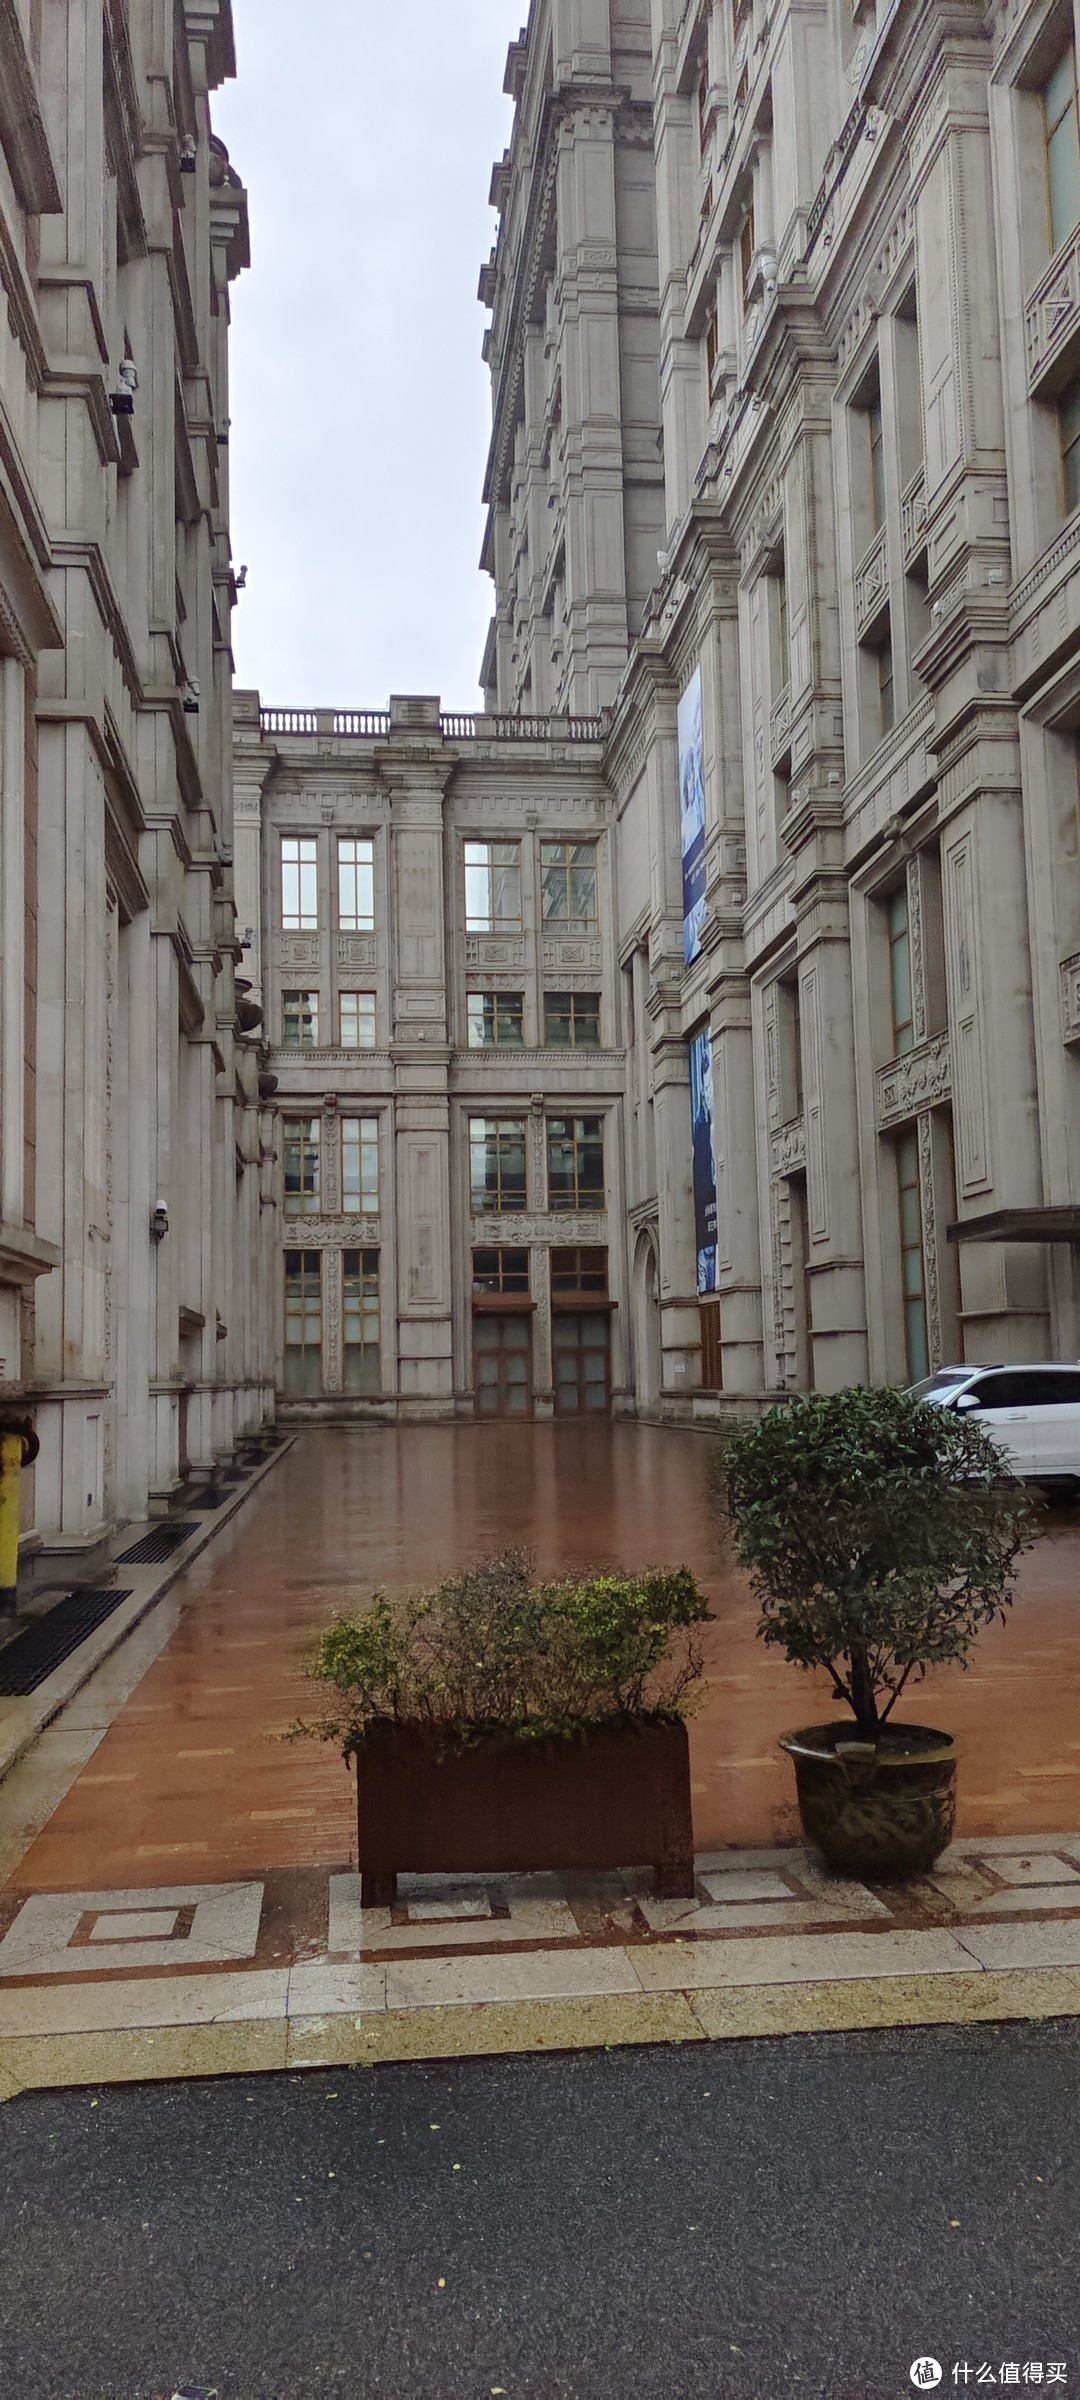 上海宝山德尔塔城堡酒店/万豪双子星之德尔塔酒店入住体验/欧式风格很出片/古堡风格大堂满满贵族气息典雅